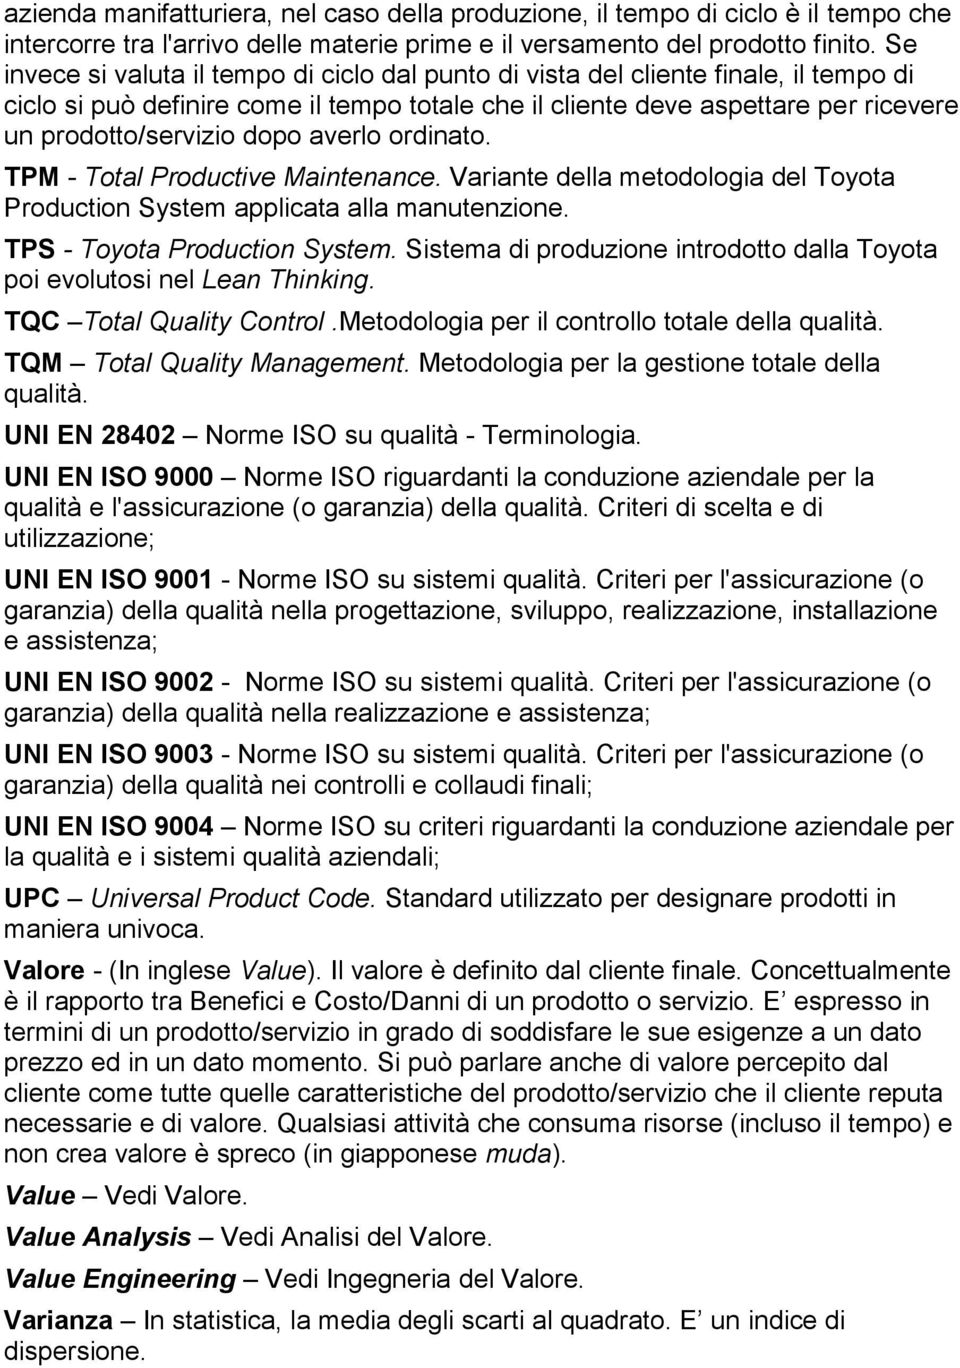 dopo averlo ordinato. TPM - Total Productive Maintenance. Variante della metodologia del Toyota Production System applicata alla manutenzione. TPS - Toyota Production System.